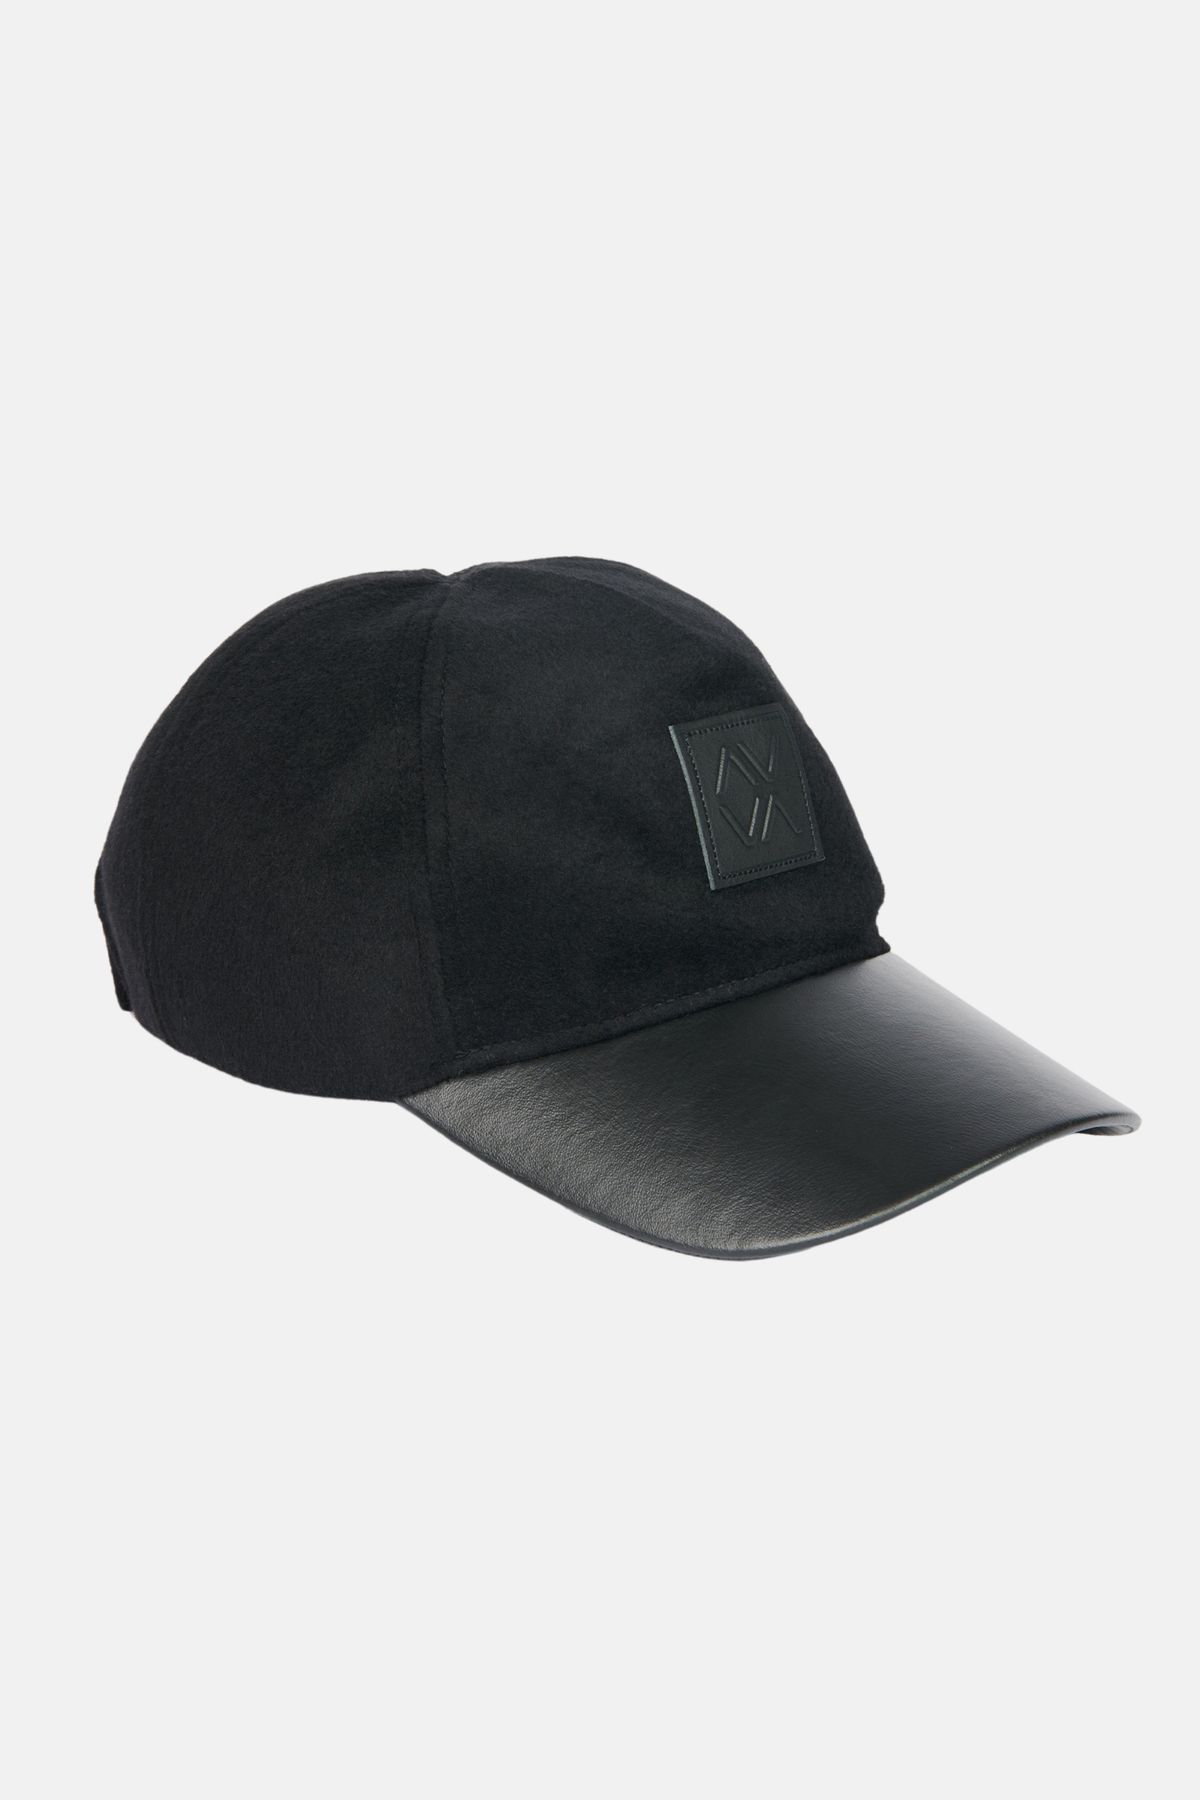 Avva Erkek Siyah Deri Görünümlü Siperlikli Kaşe Şapka A32y9209